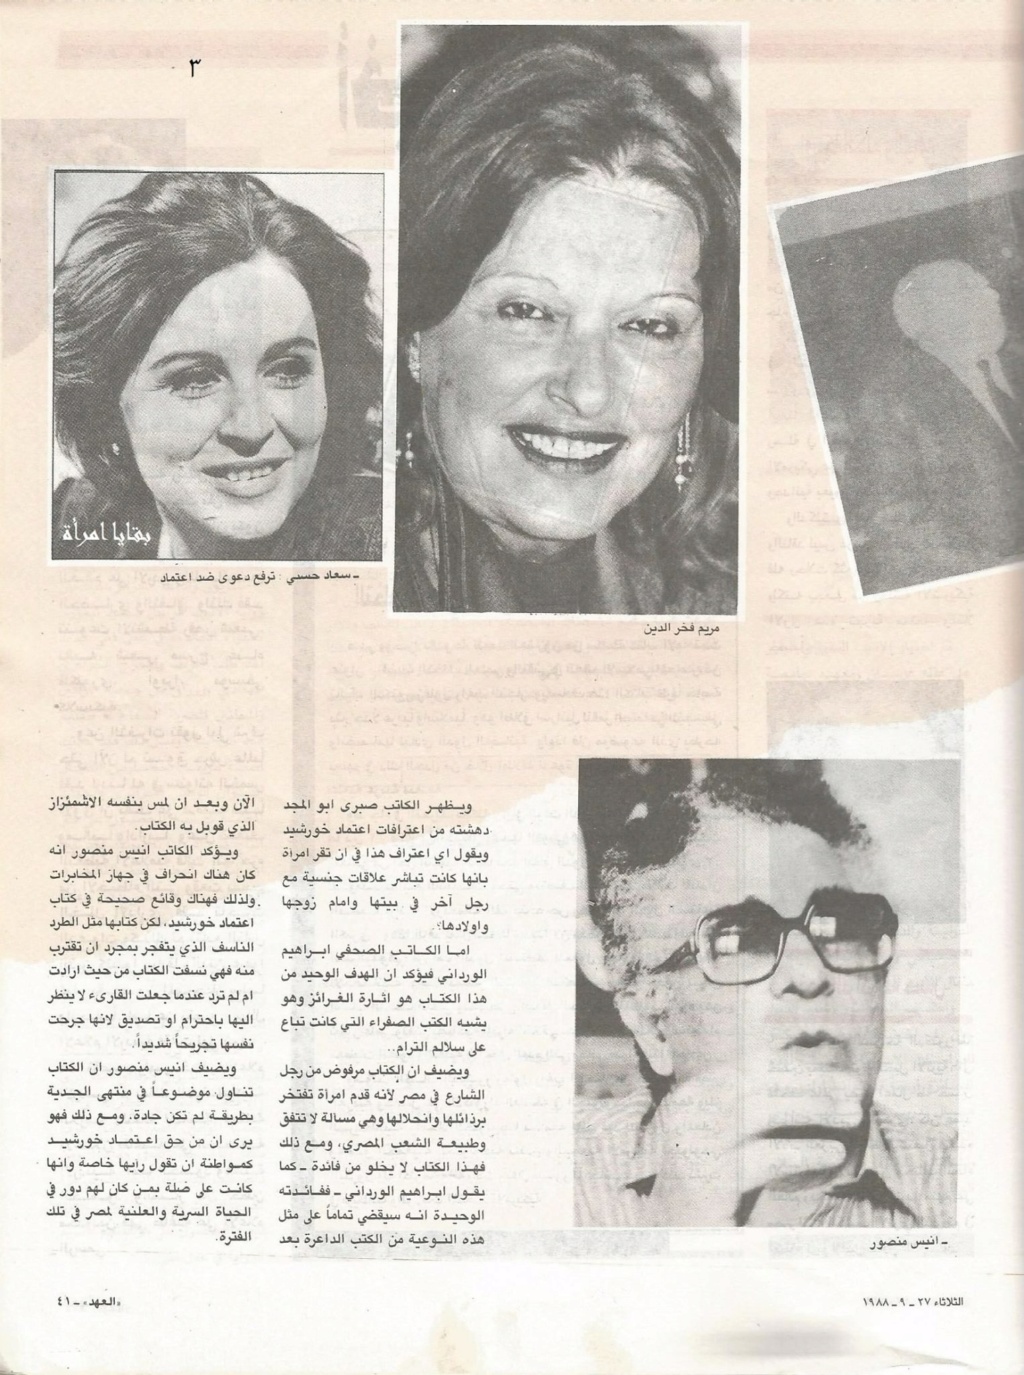 1988 - مقال صحفي : سعاد حسني ترفع دعوى ضد اعتماد خورشيد 1988 م 3154